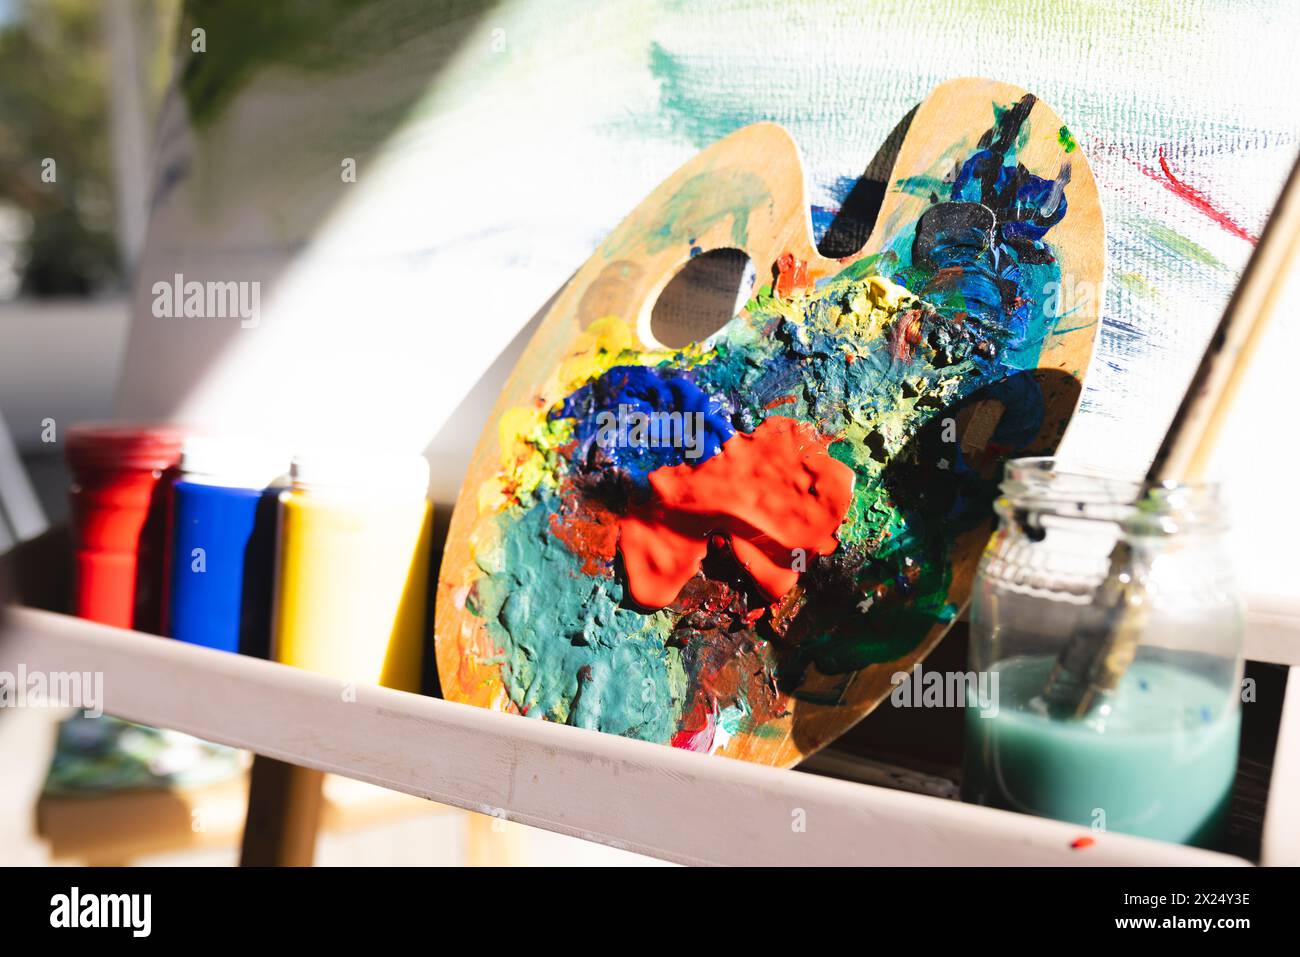 Une palette recouverte de peinture colorée repose sur un chevalet à la maison. La lumière du soleil brille sur les toiles, mettant en évidence des teintes vibrantes, inaltérées. Banque D'Images